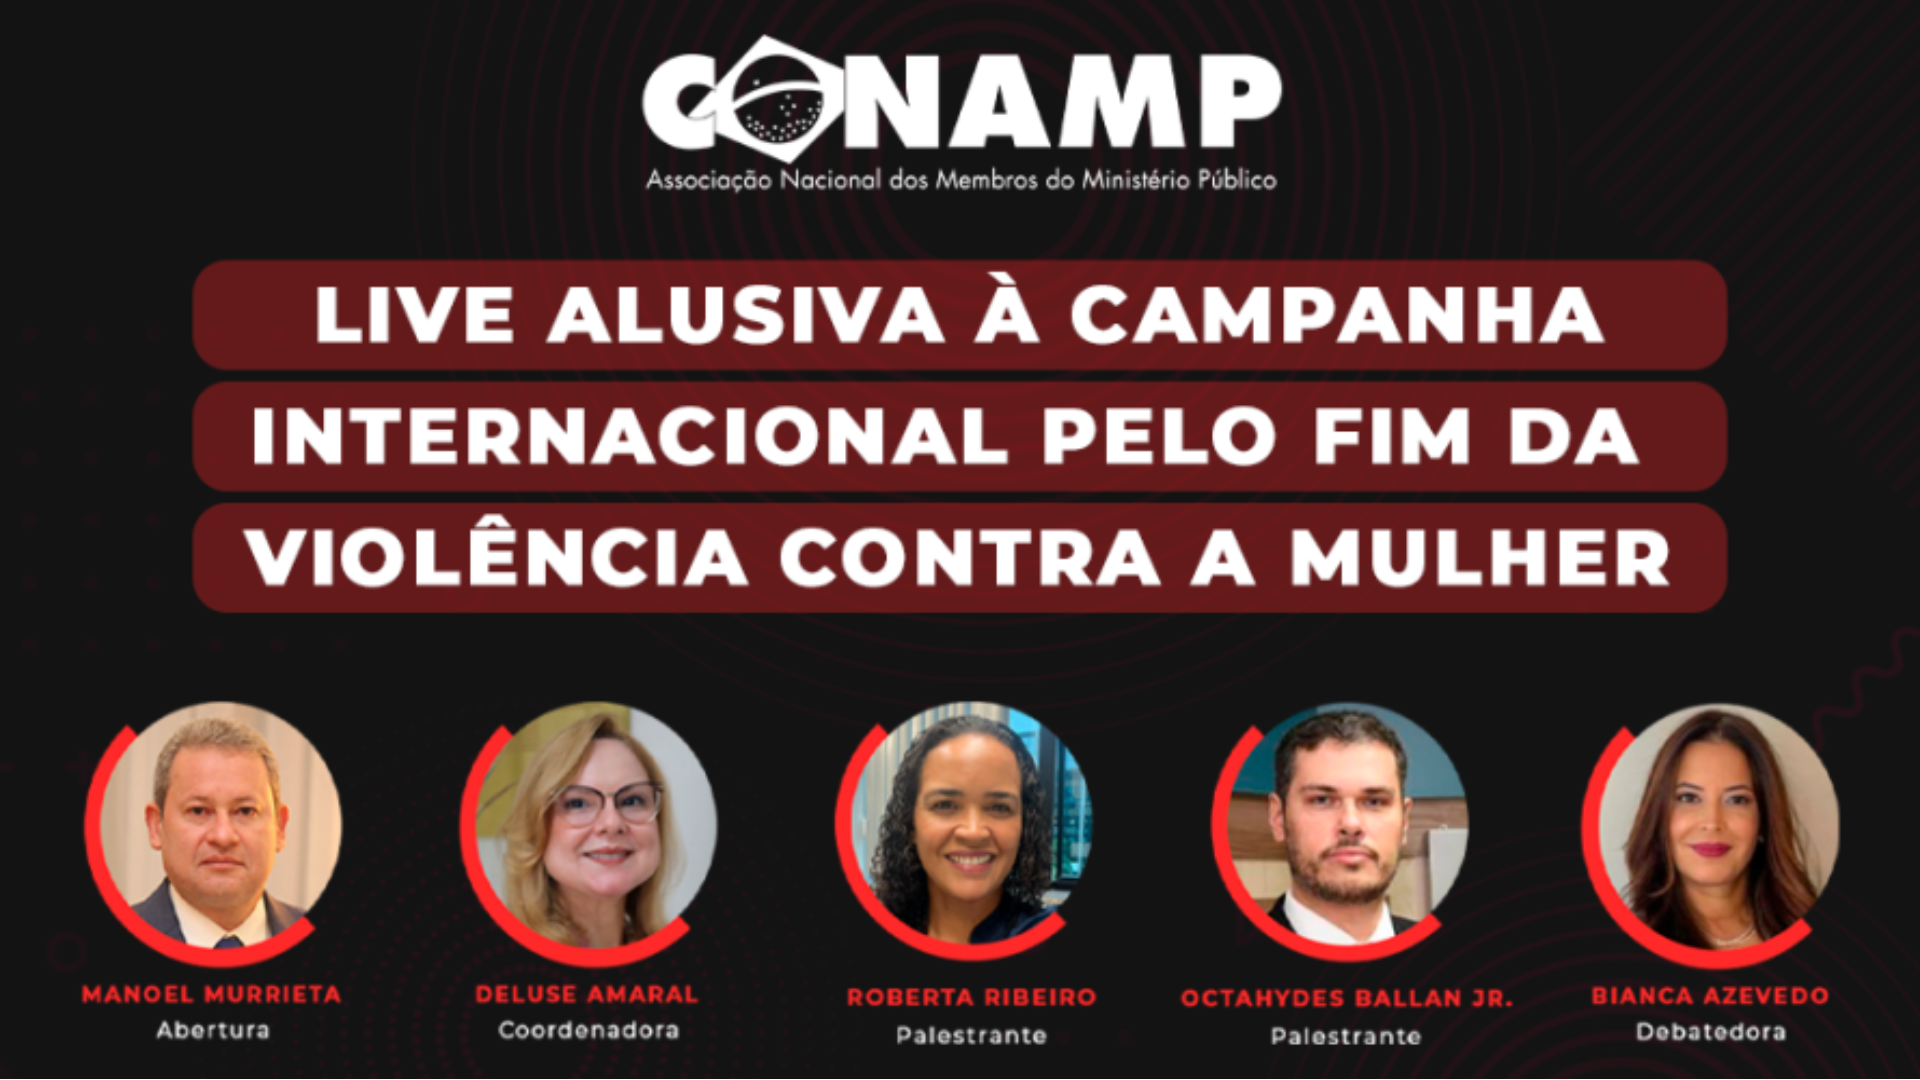 WImóveis lança campanha Calmapara comemorar seus 25 anos de atuação em  Brasília - ABC da Comunicação